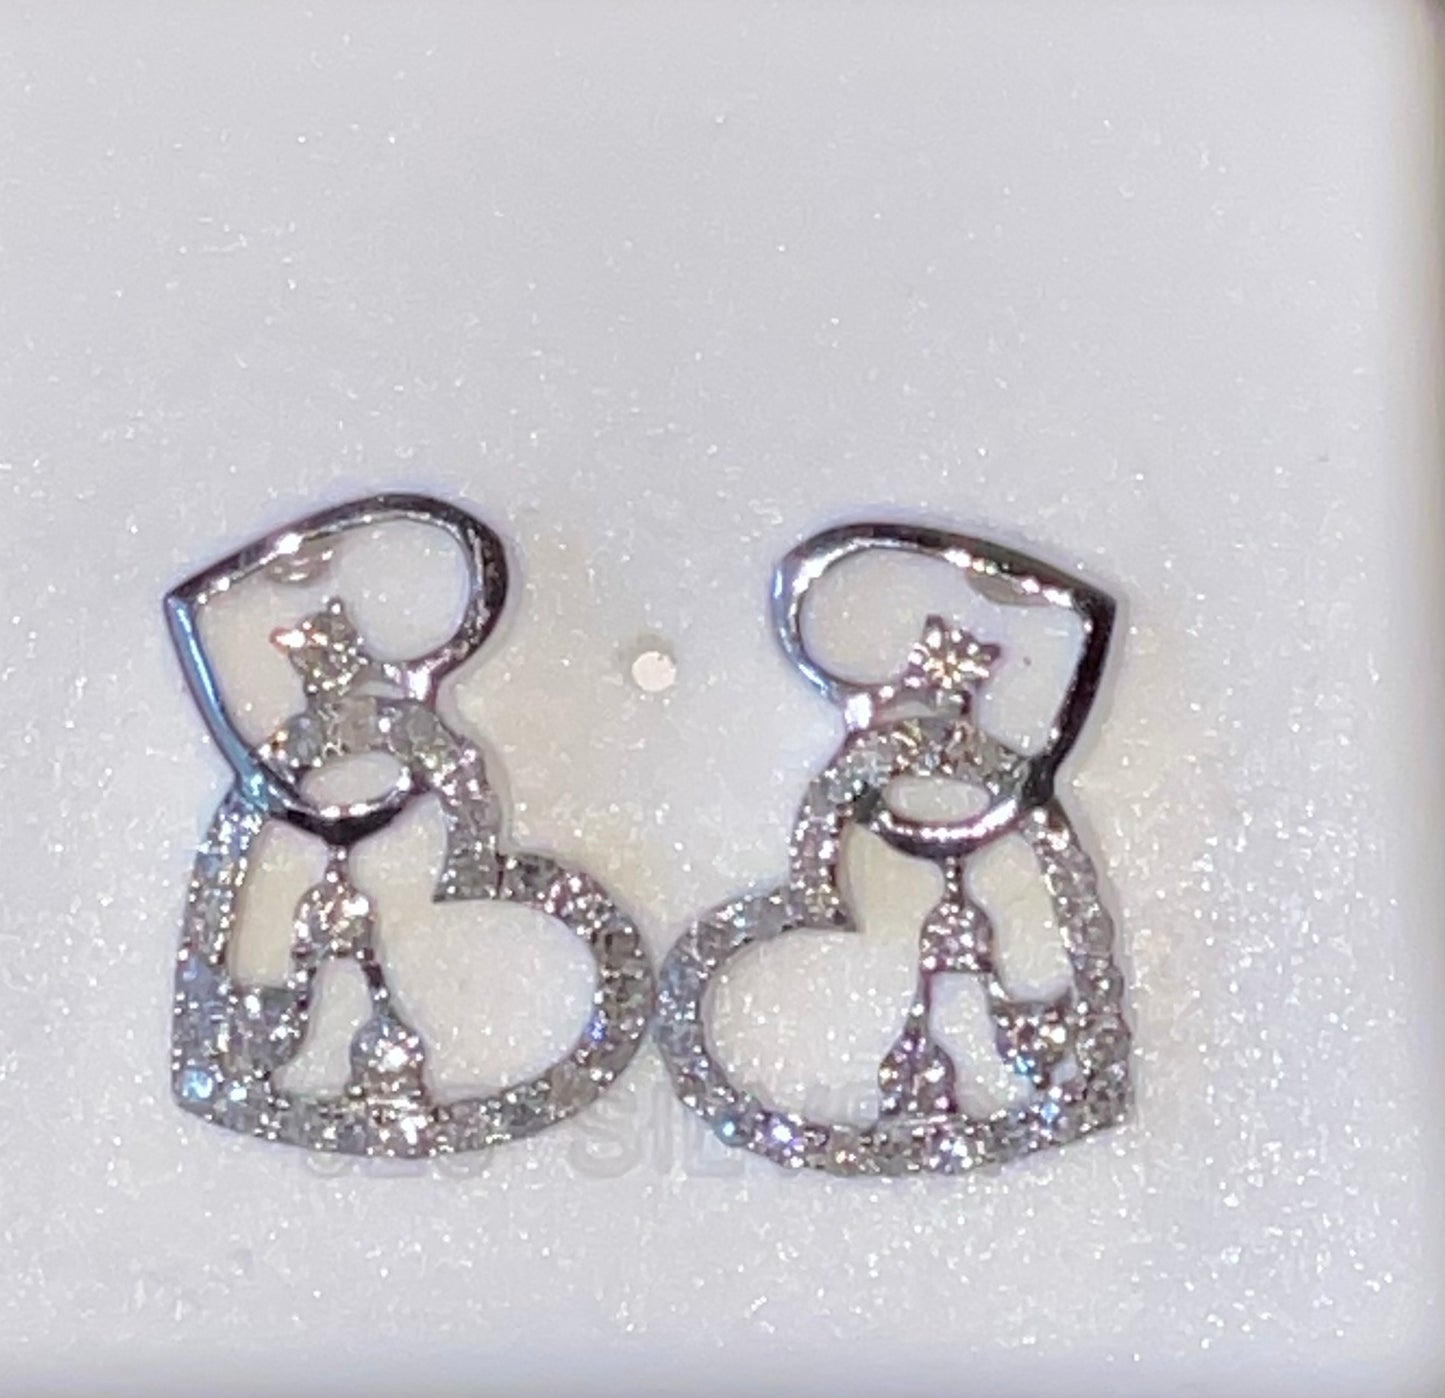 10K Diamond Heart Earrings